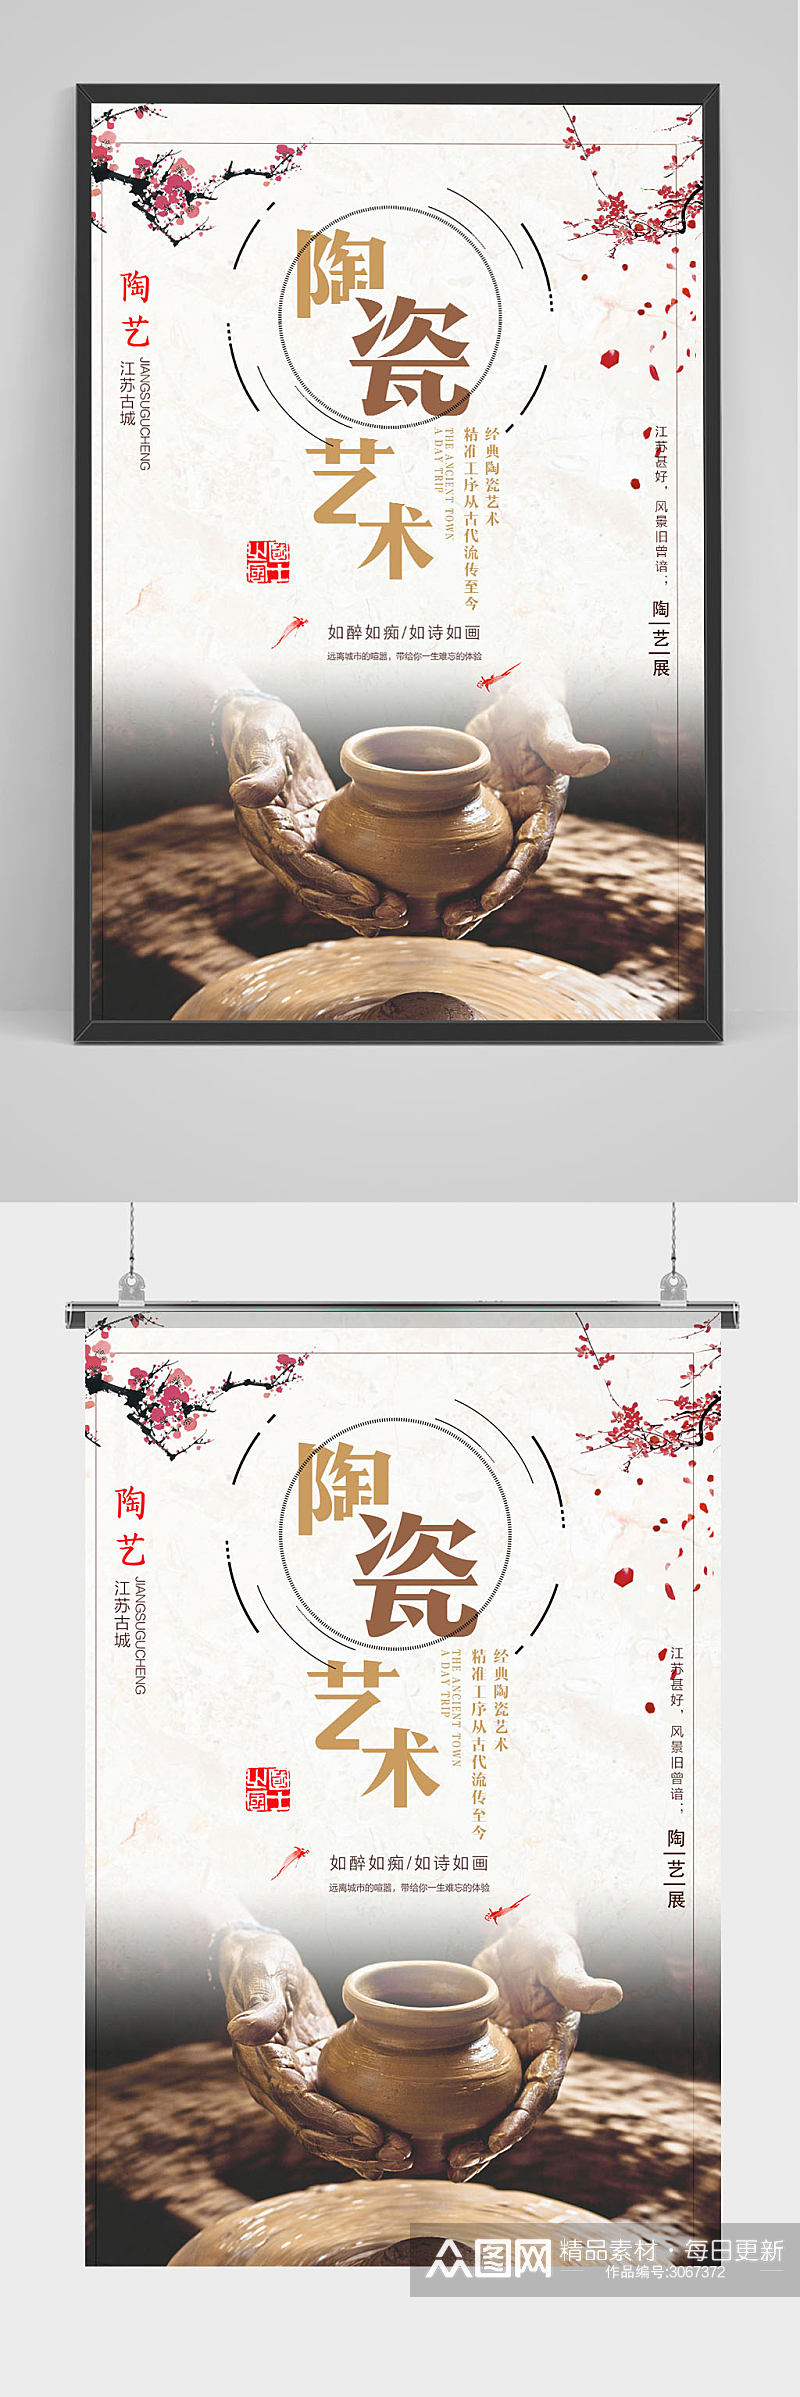 陶瓷艺术陶艺传统工艺中国风宣传海报素材